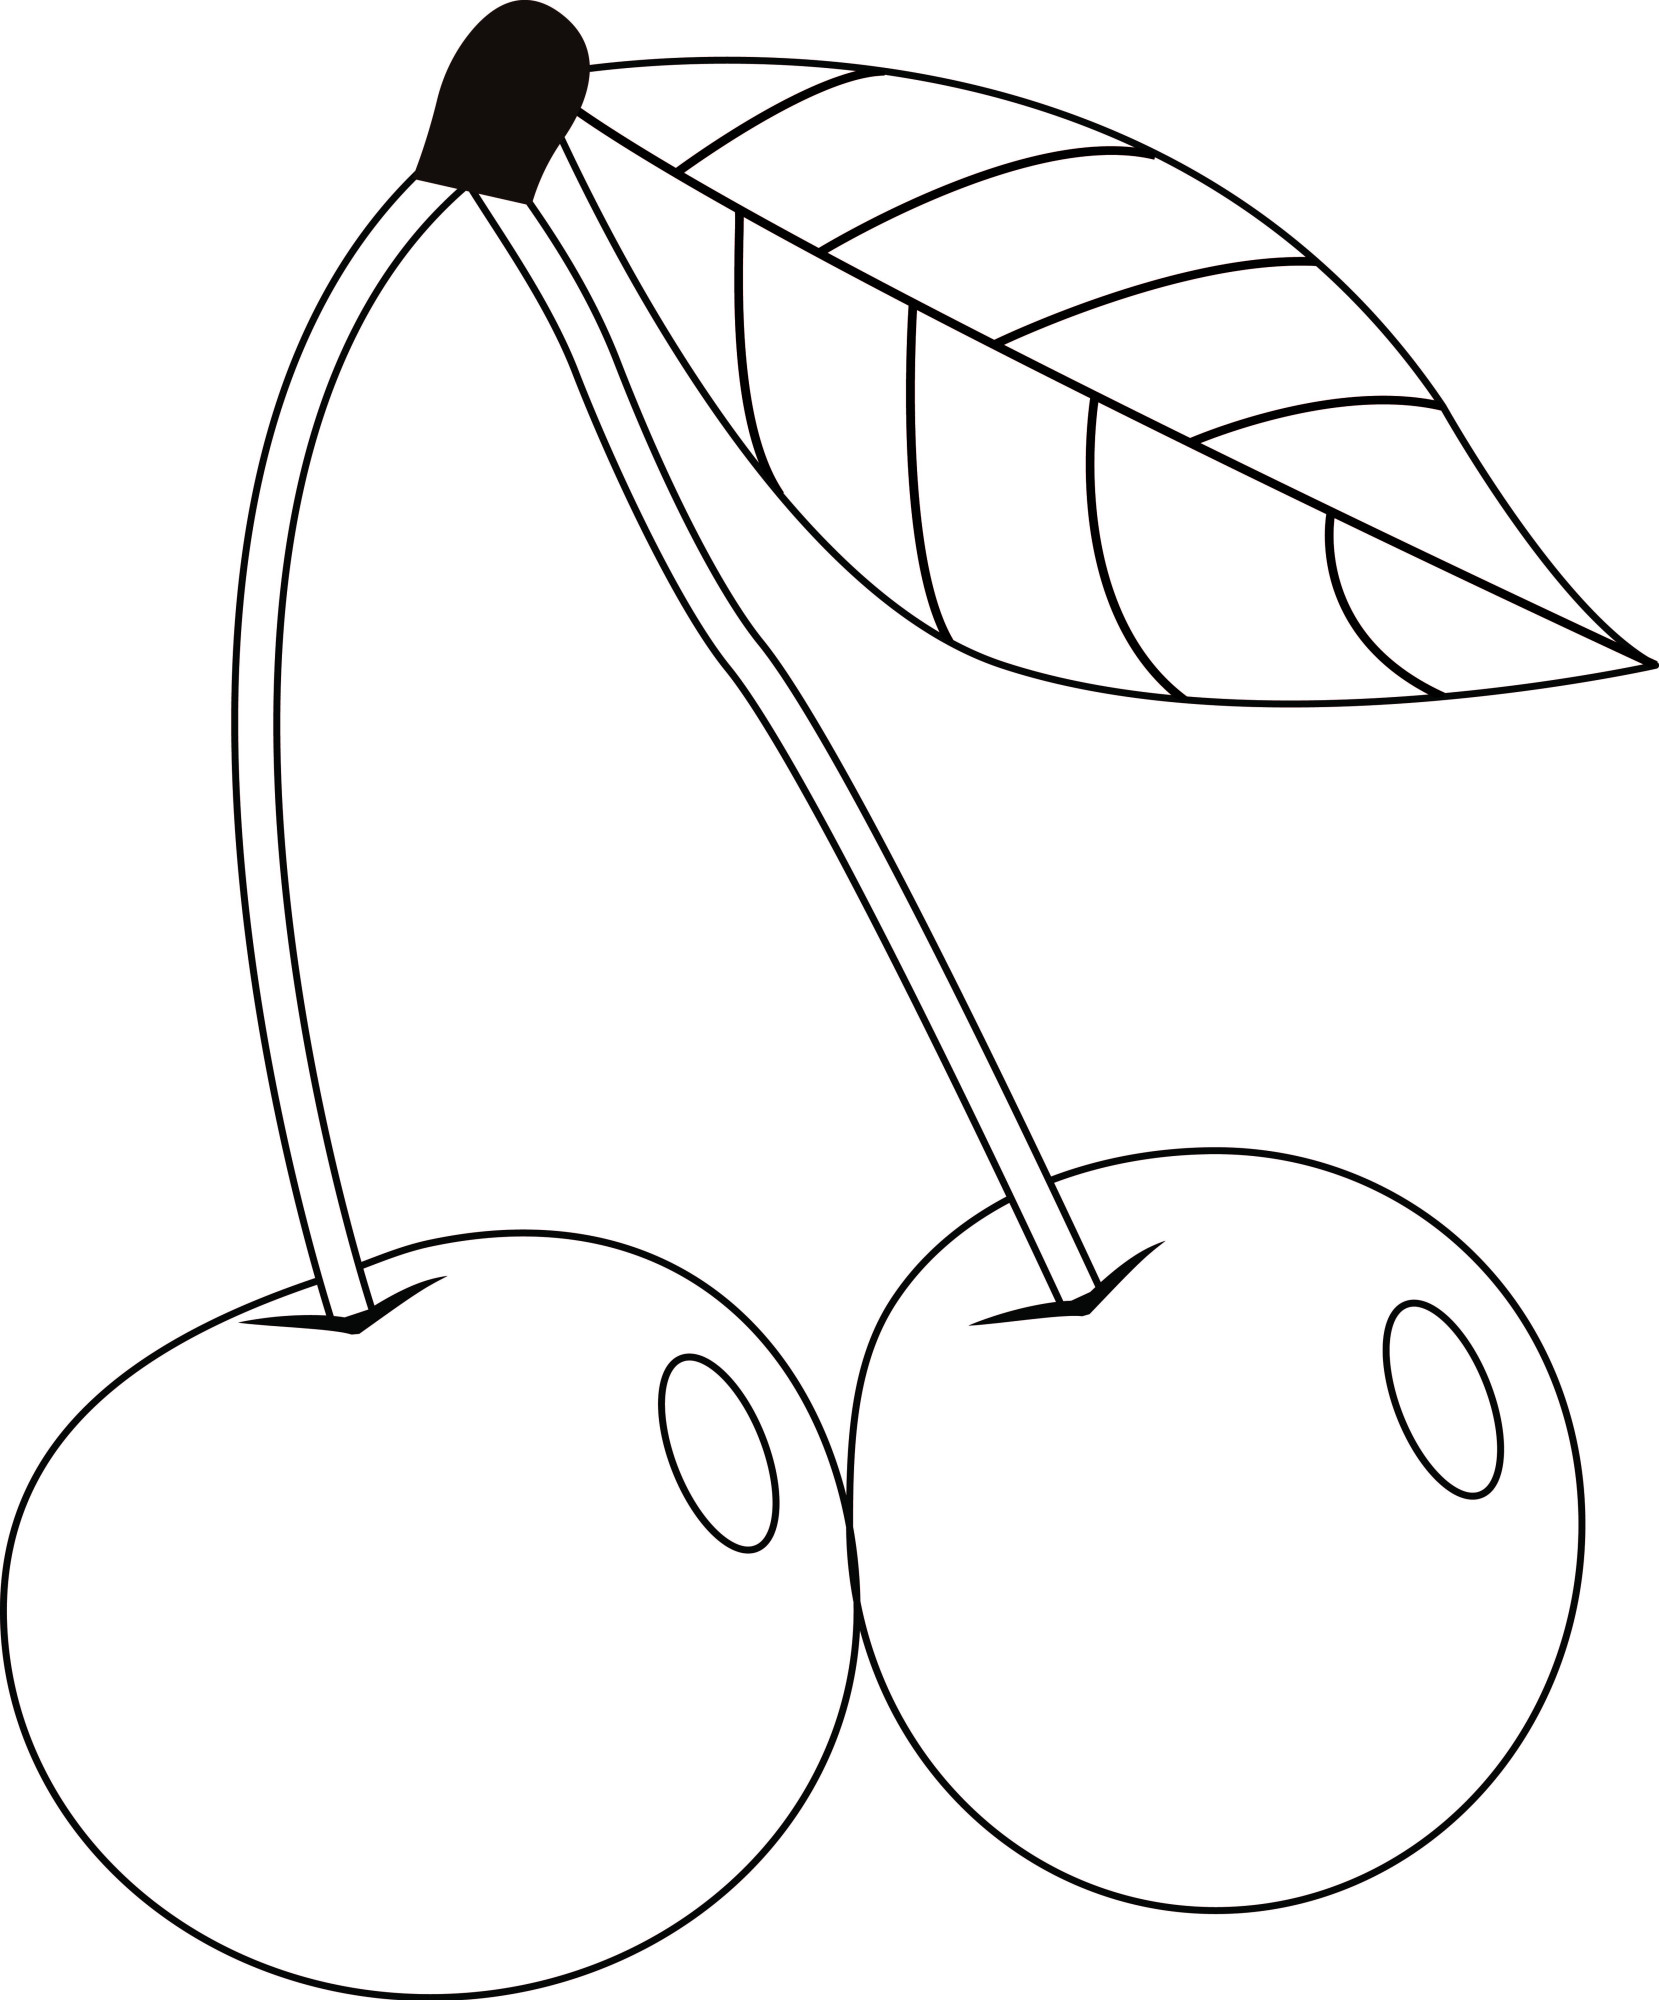 Раскраска для детей: ягоды на веточке дерева вишни